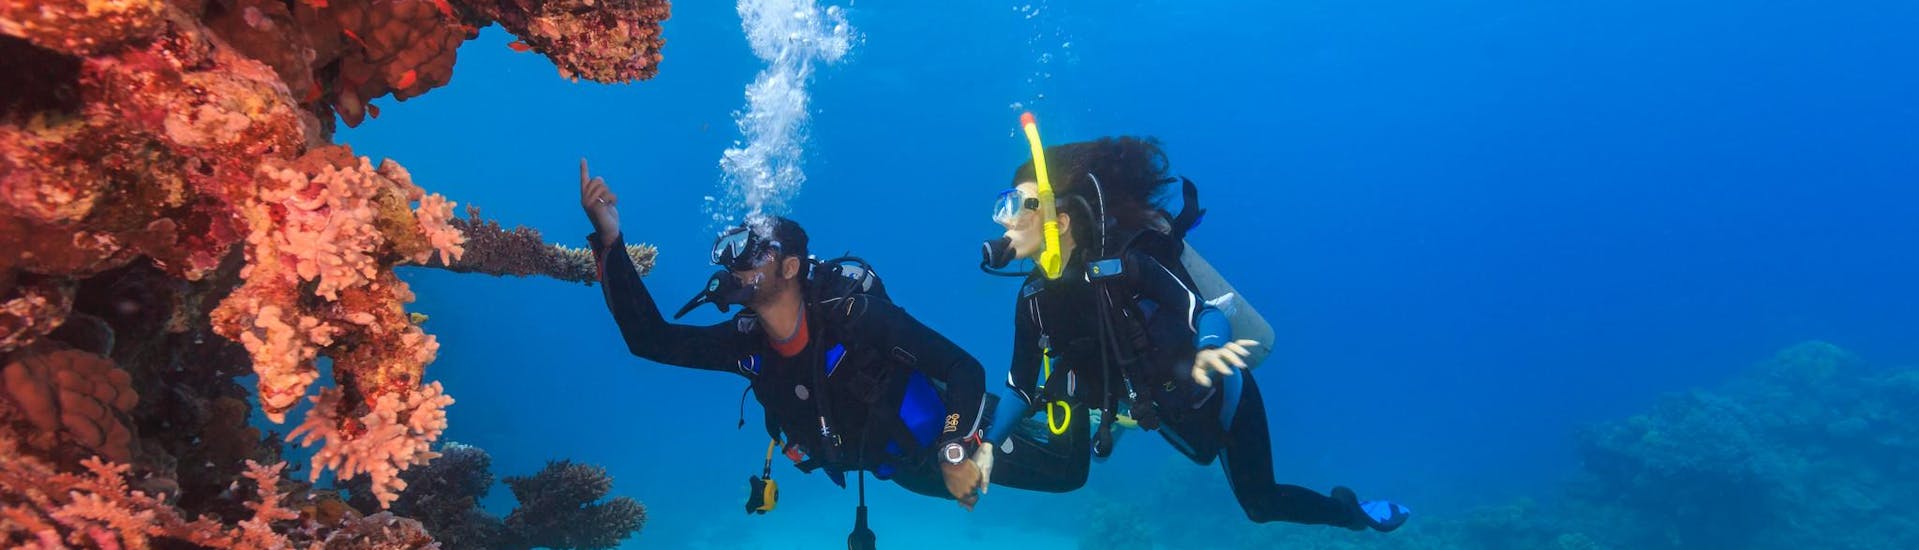 Un gruppo di subacquei che segue un corso FFESSM vicino a una barriera corallina.